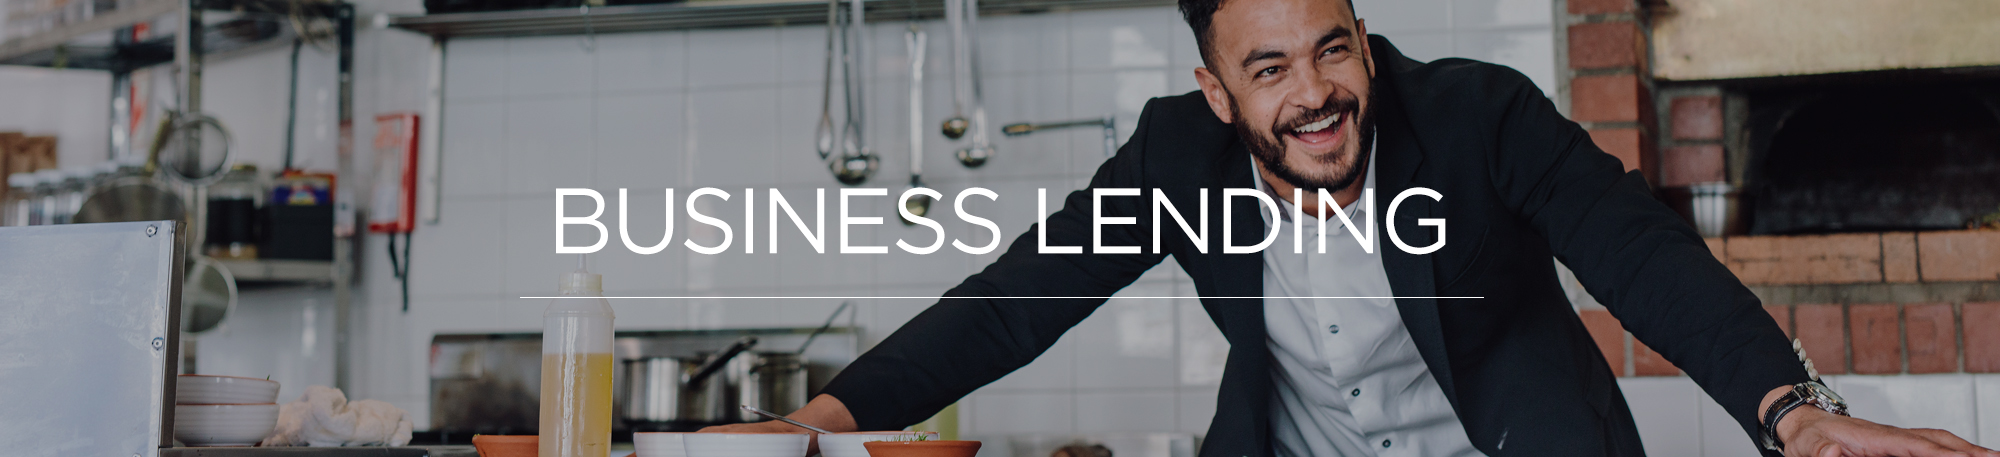 Business Lending Header Image